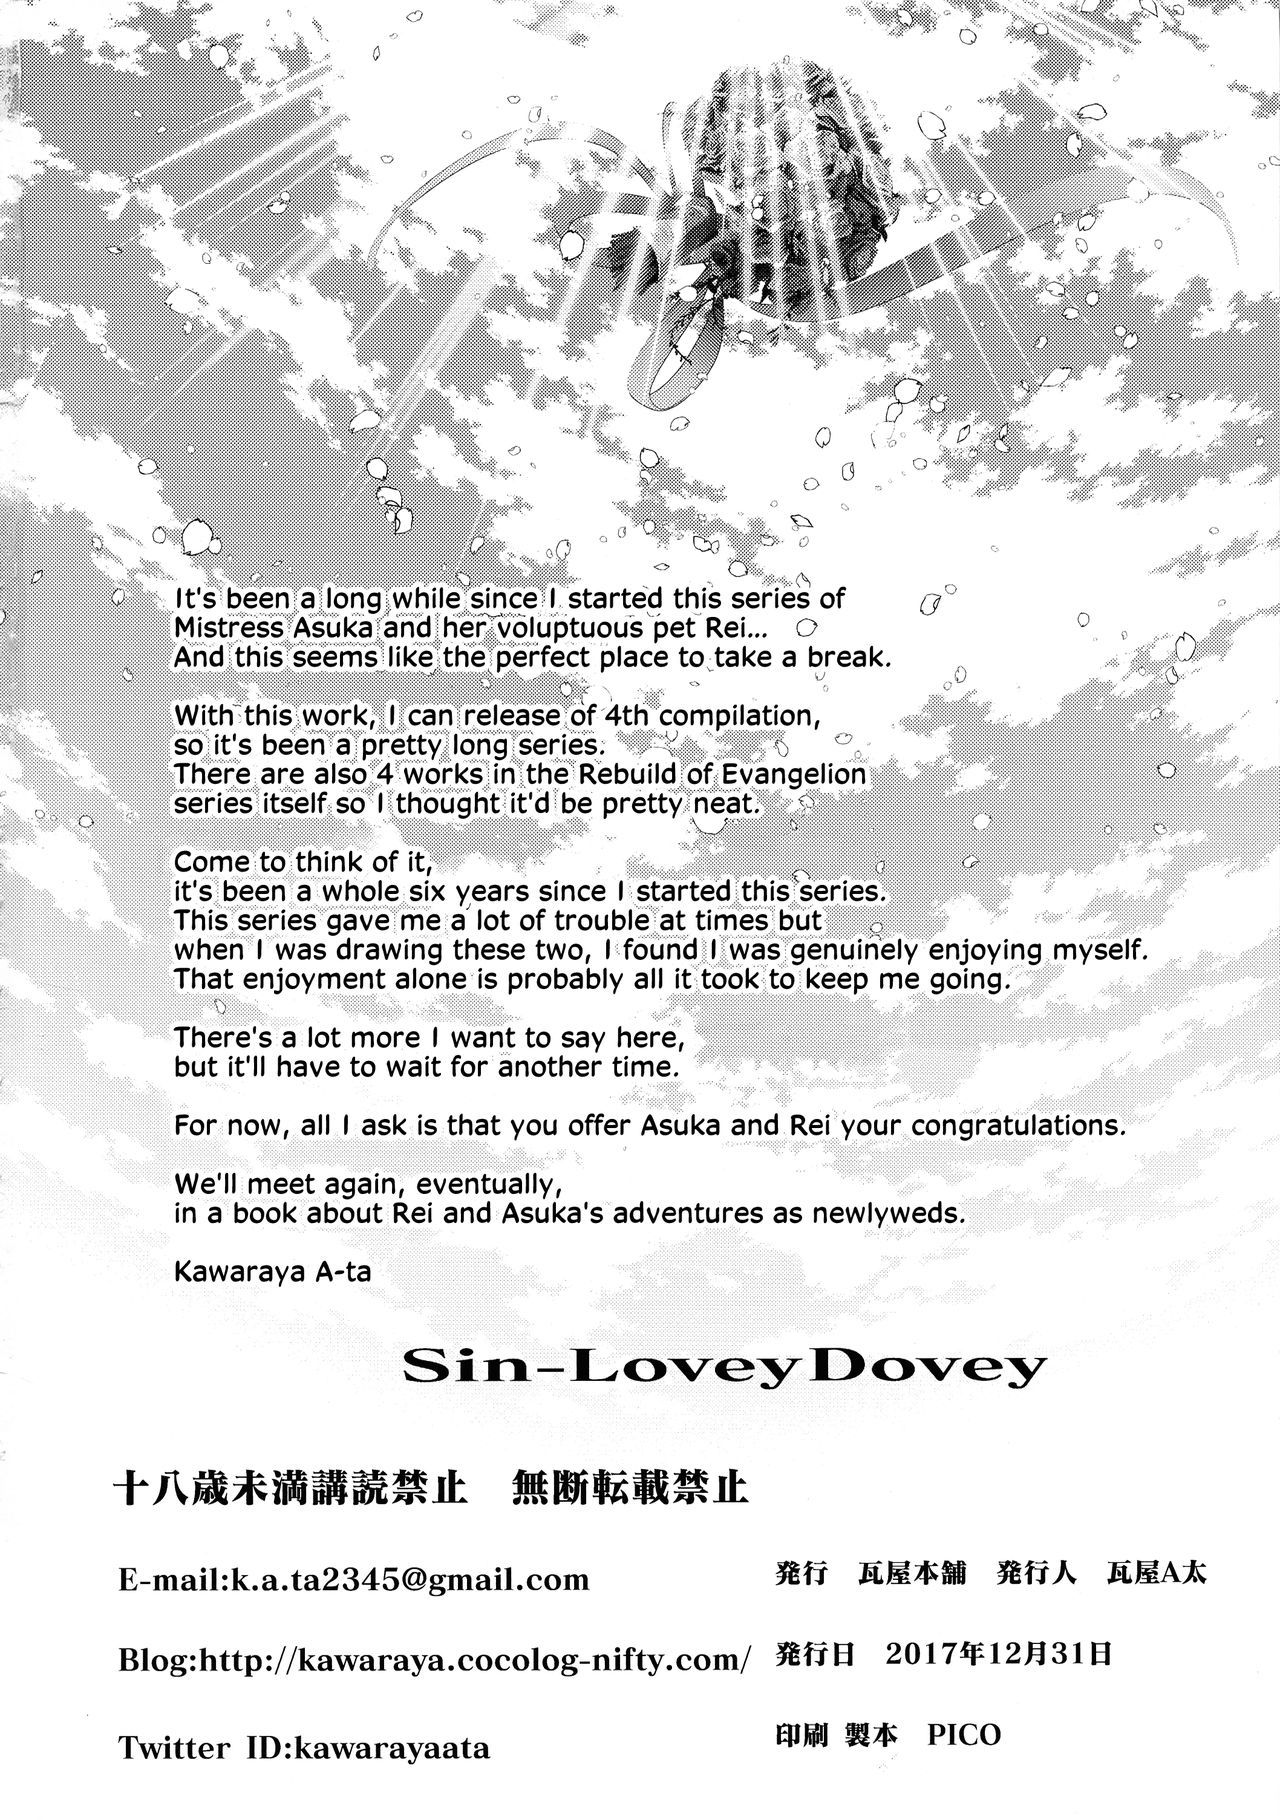 Sin-Lovey Dovey = SW =